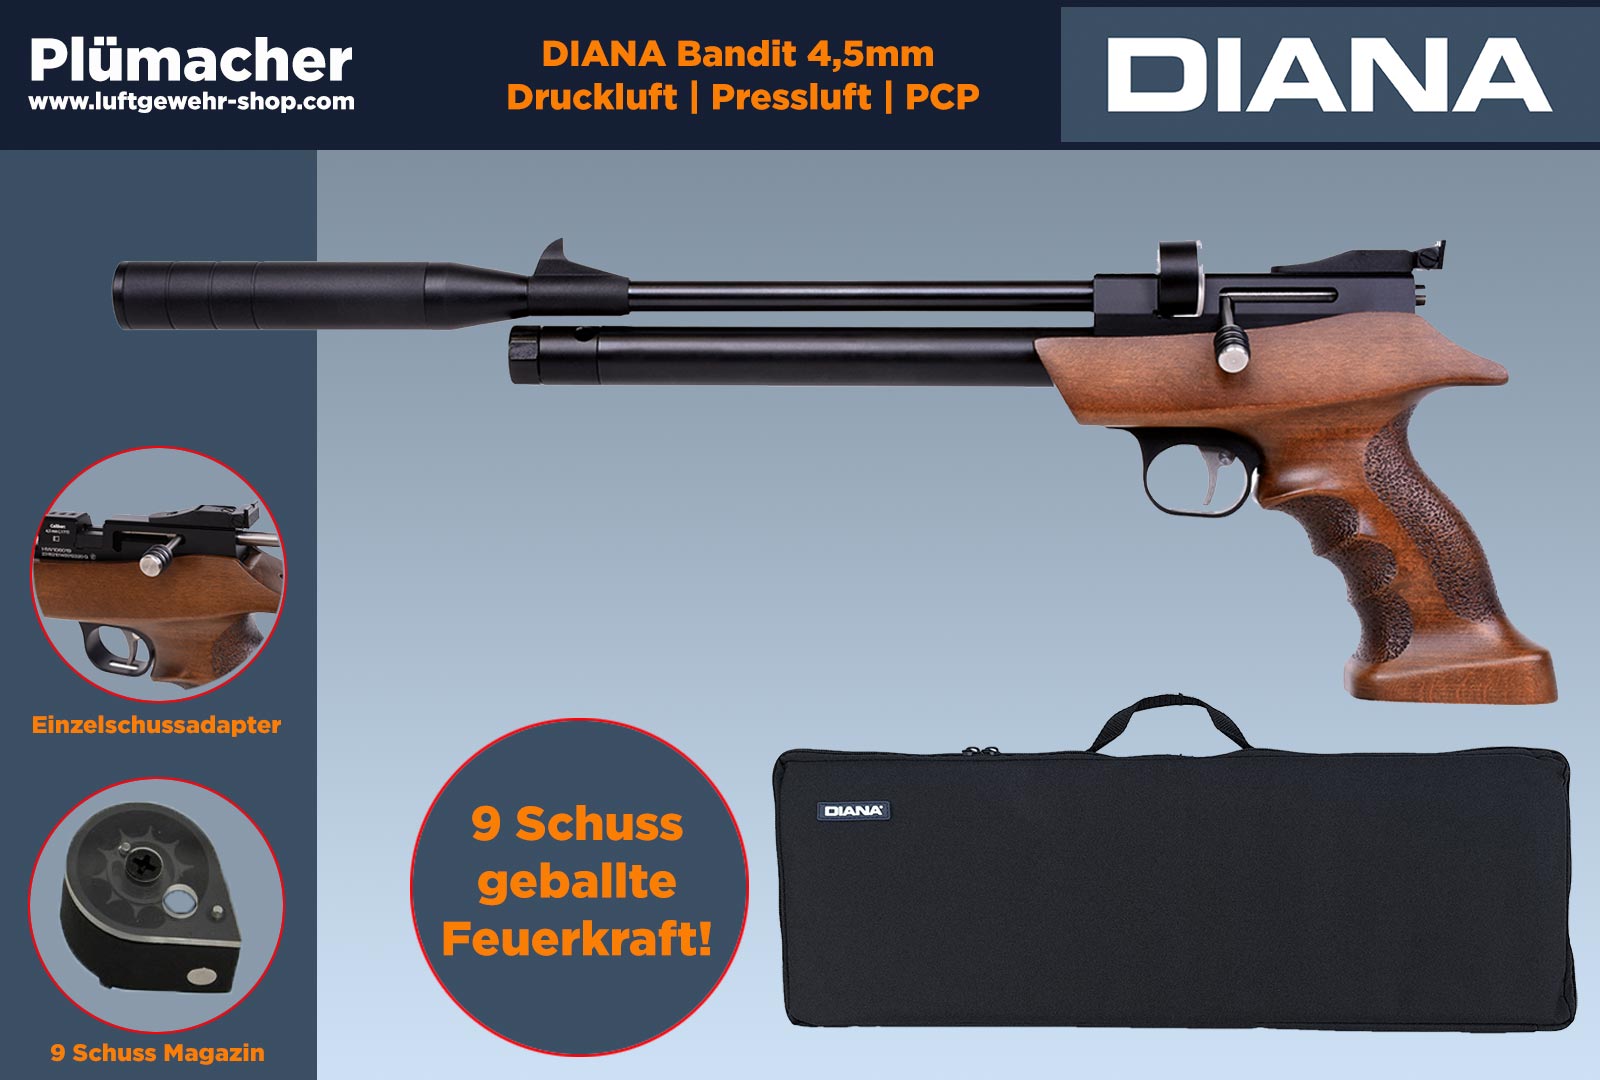 Diana Bandit Pressluftpistole und PCP Pistole. Luftgewehr-Shop -  Luftgewehre, Schreckschusswaffen, CO2 Waffen, Luftpistolen kaufen